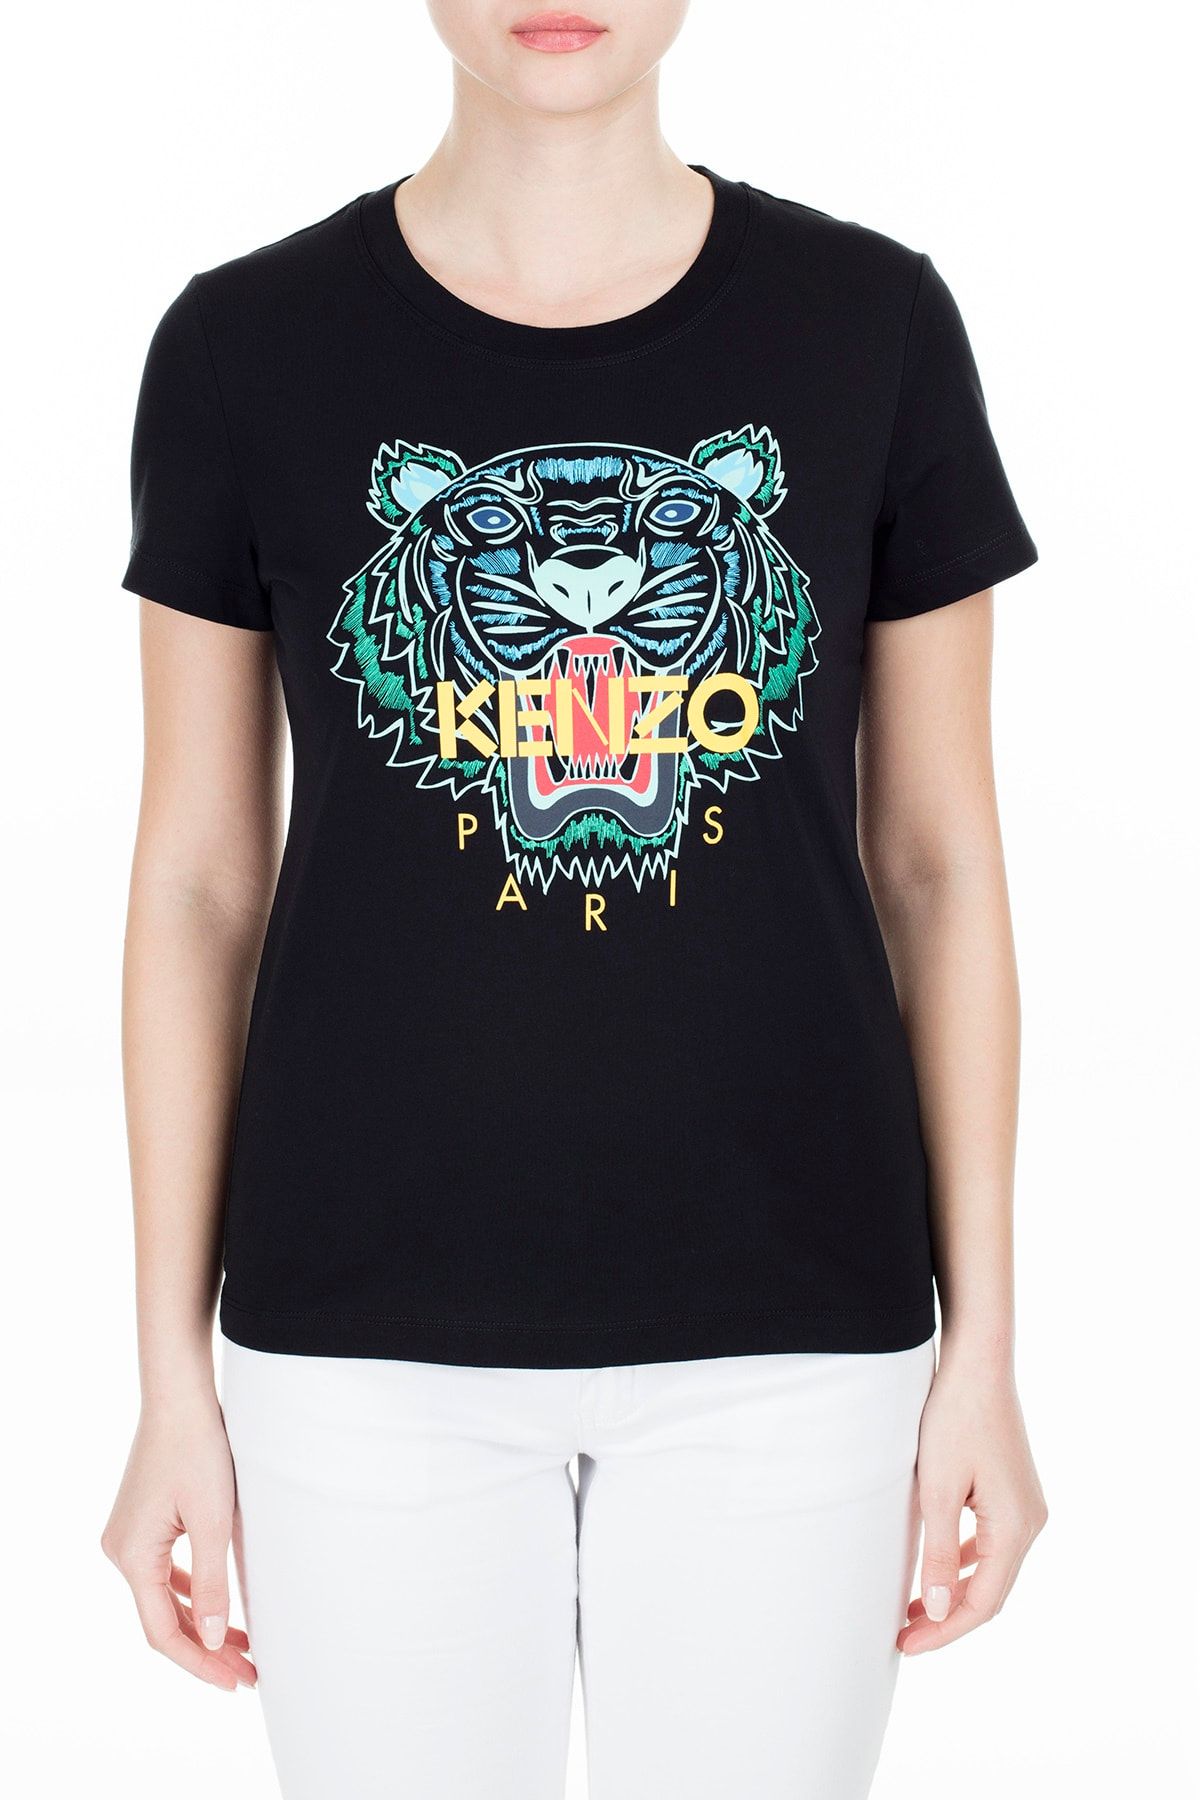 Kenzo Kadın Siyah T-Shirt Fa5 2Ts721 4Yb 99